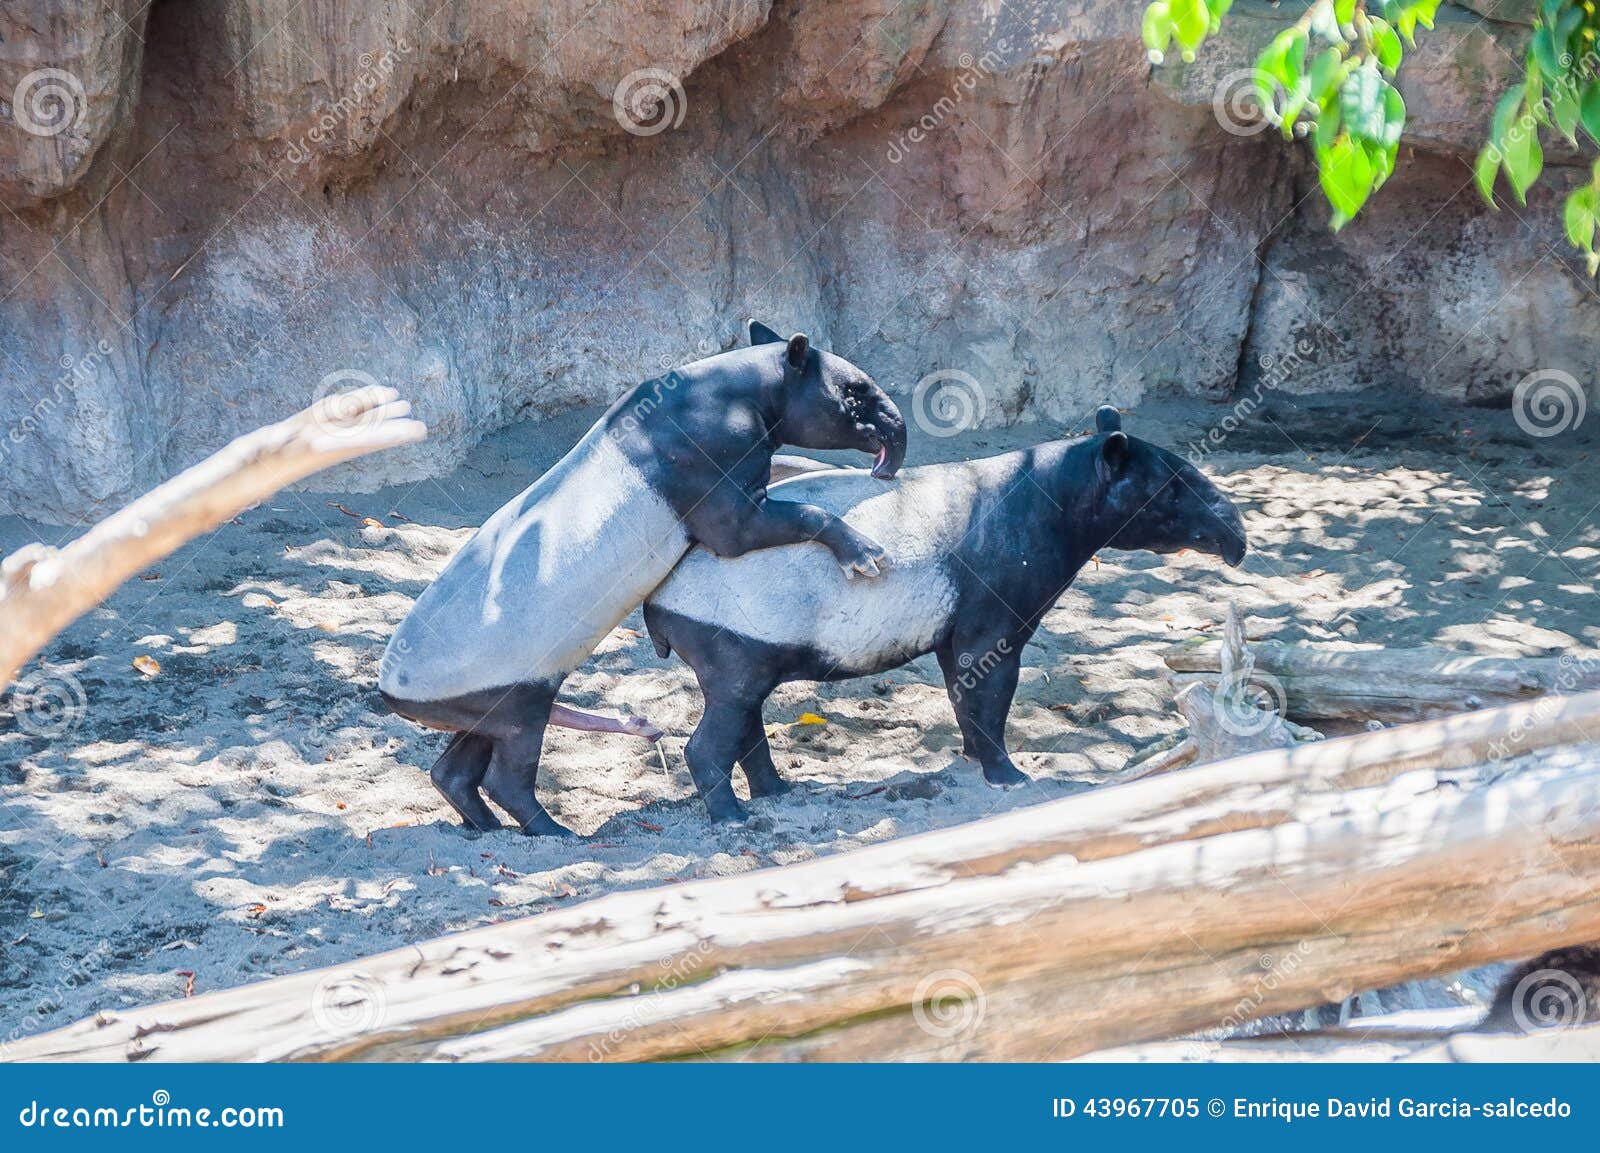 penisul în tapiri)